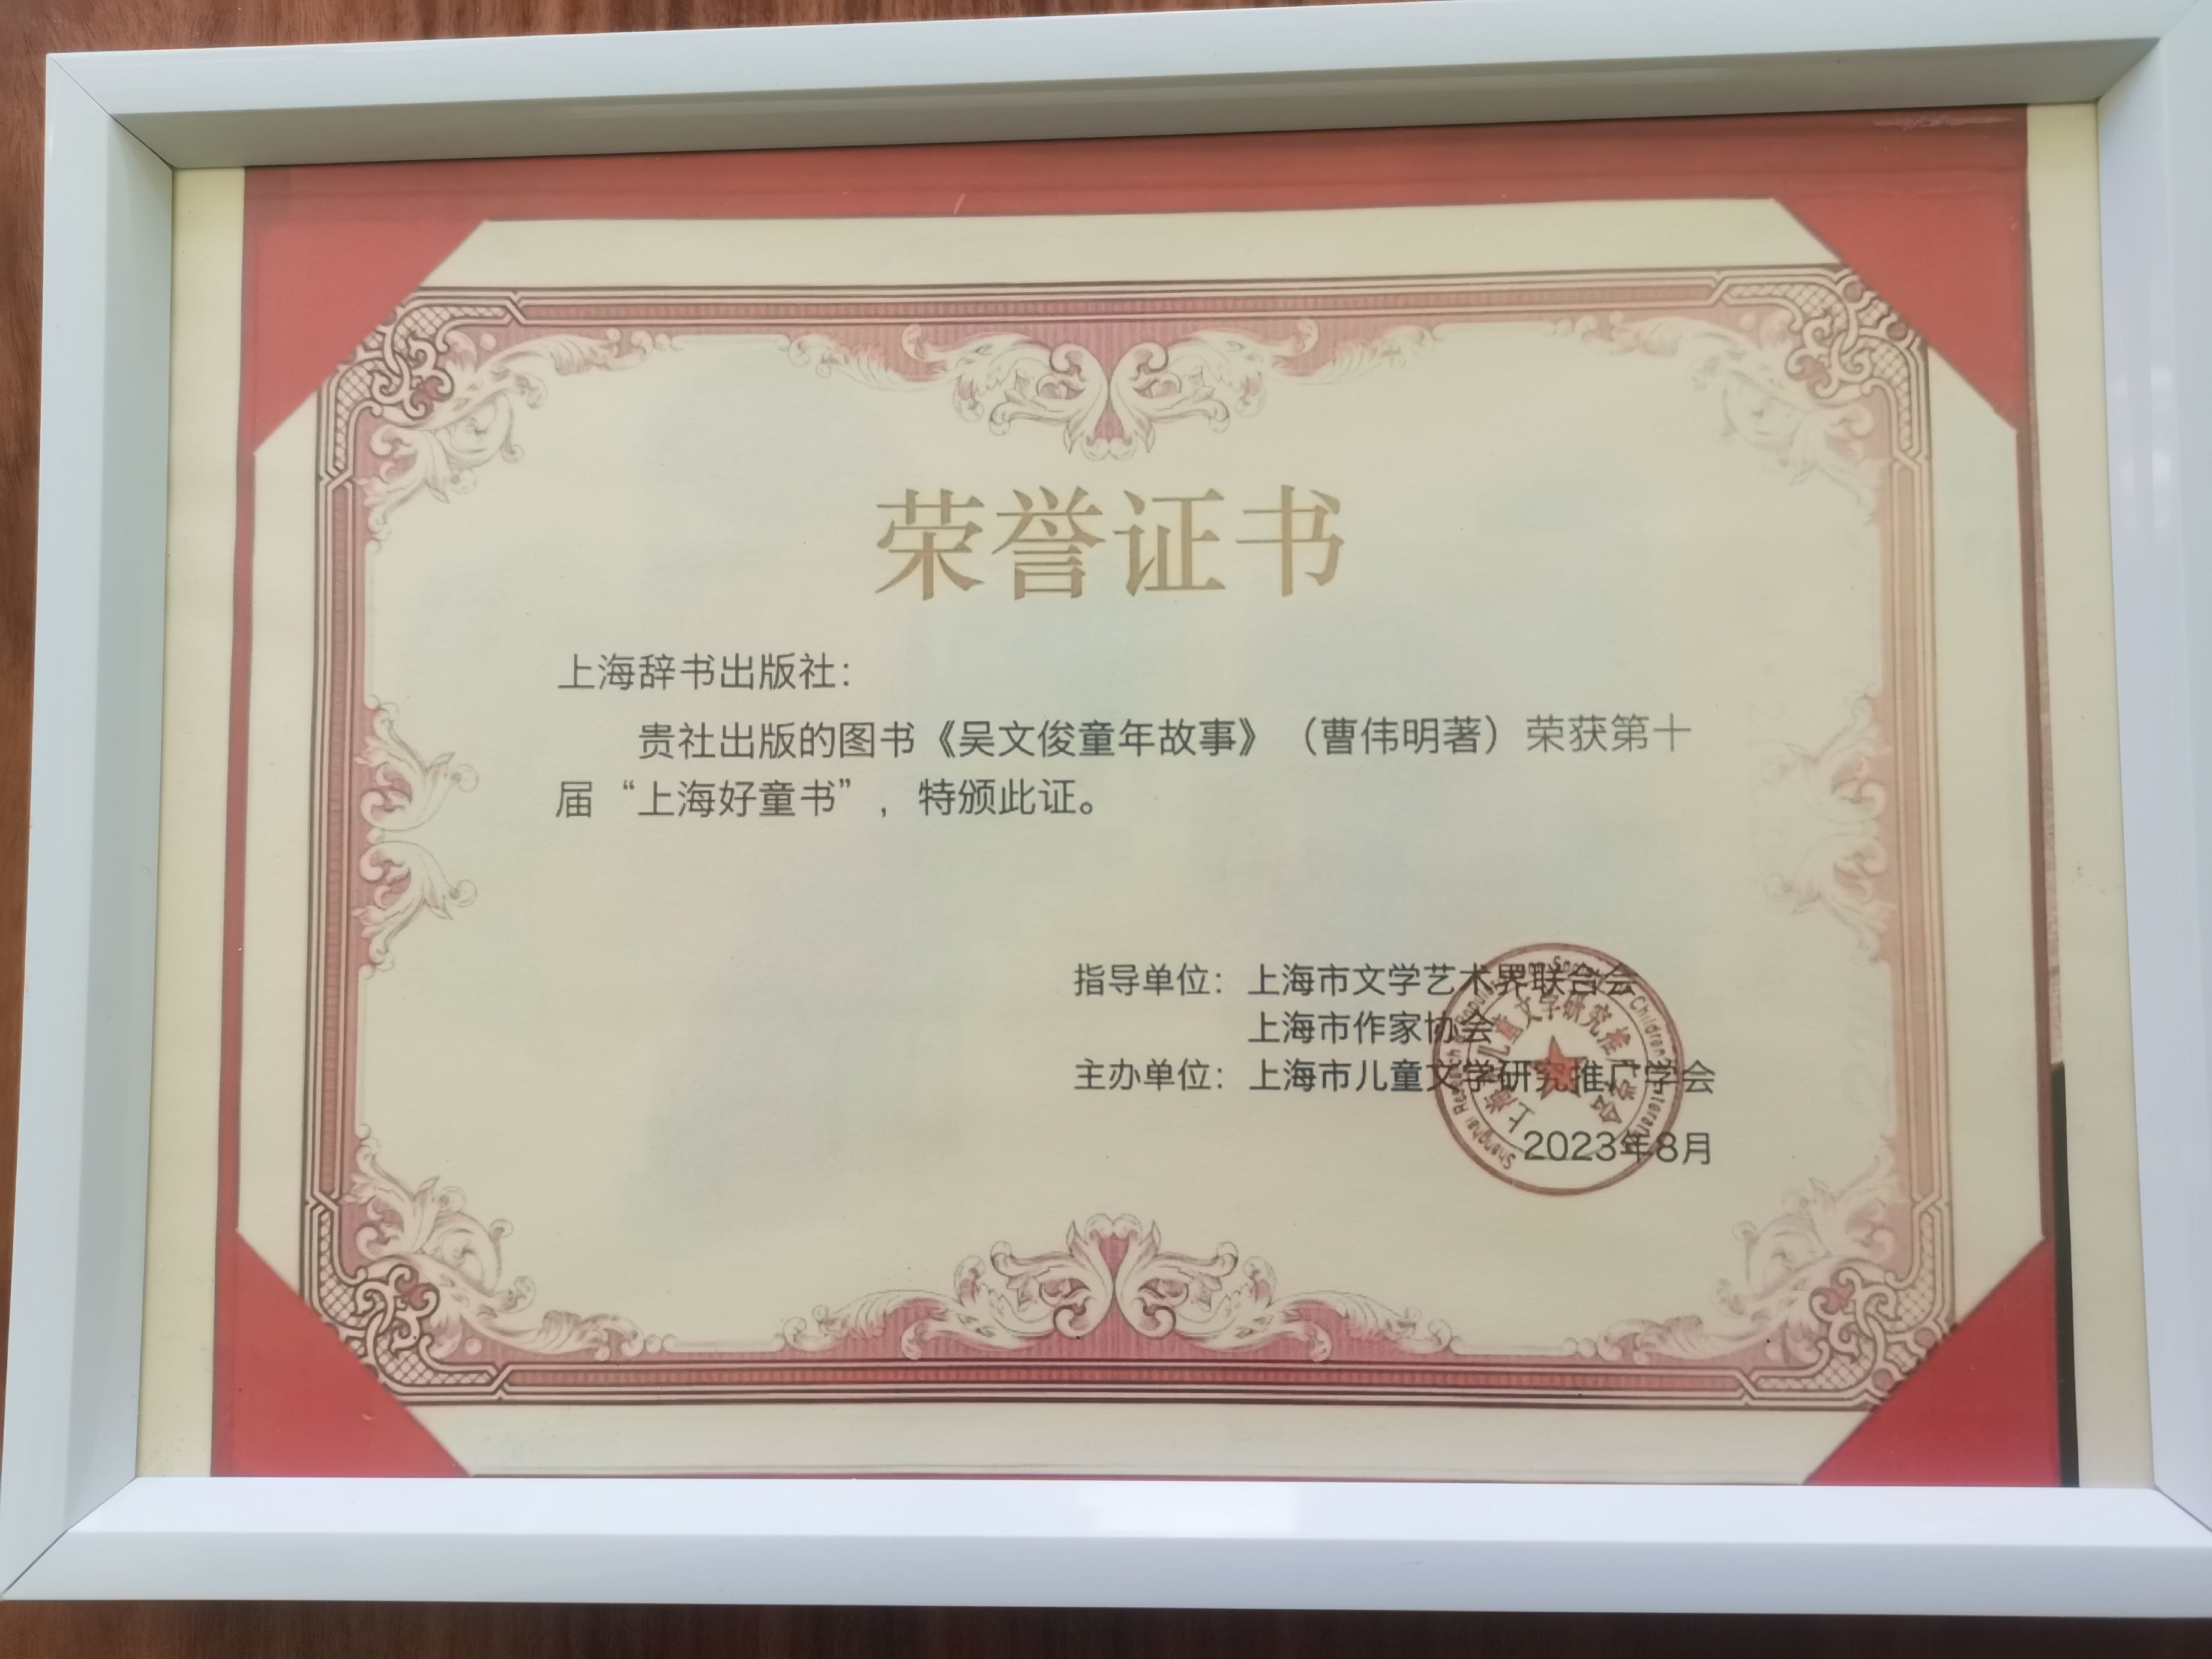 曹伟明教授著作《吴文俊童年故事》的最新获奖证书